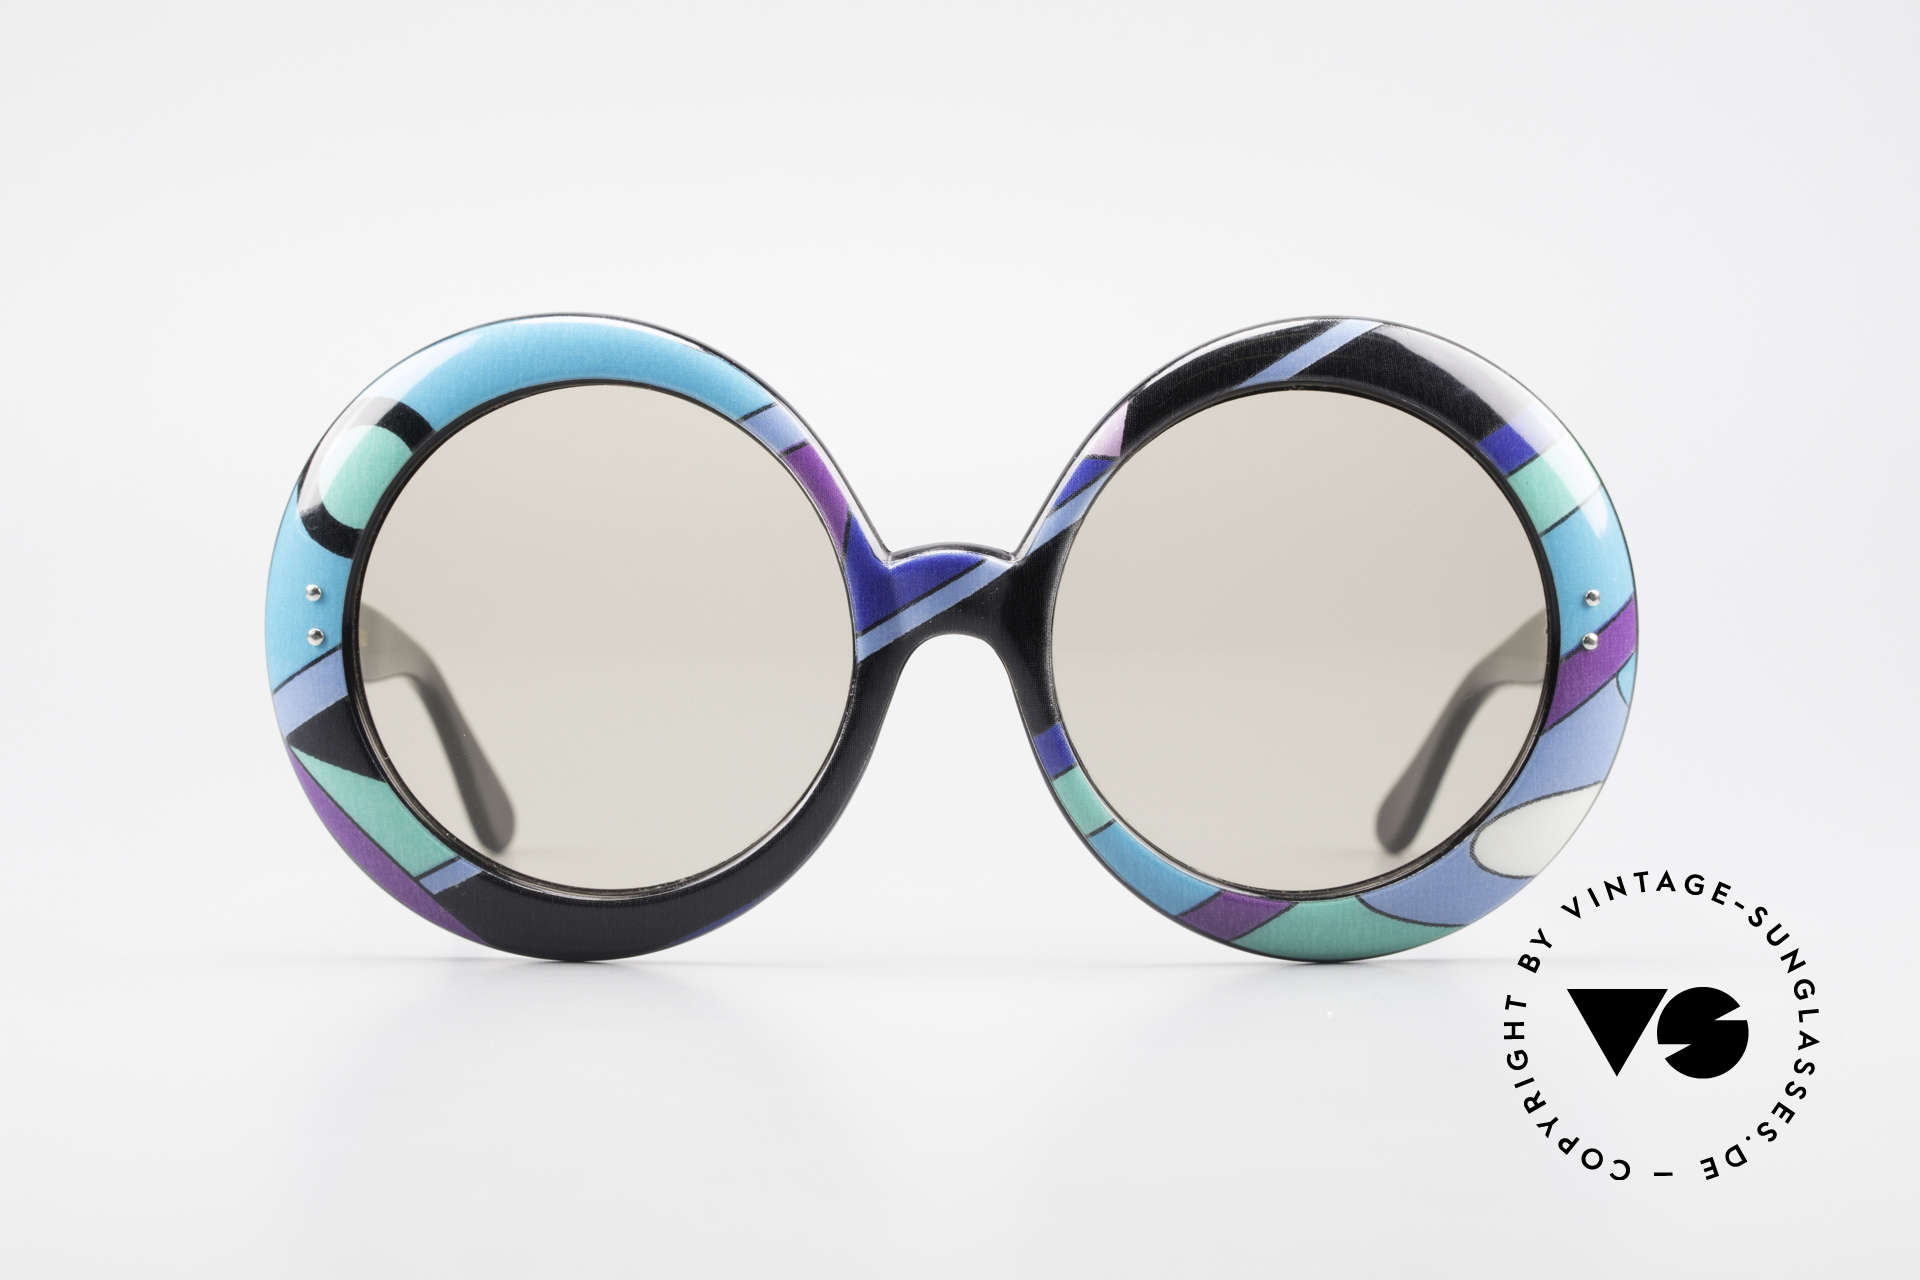 Emilio Pucci Women's Psychedelic Sunglasses